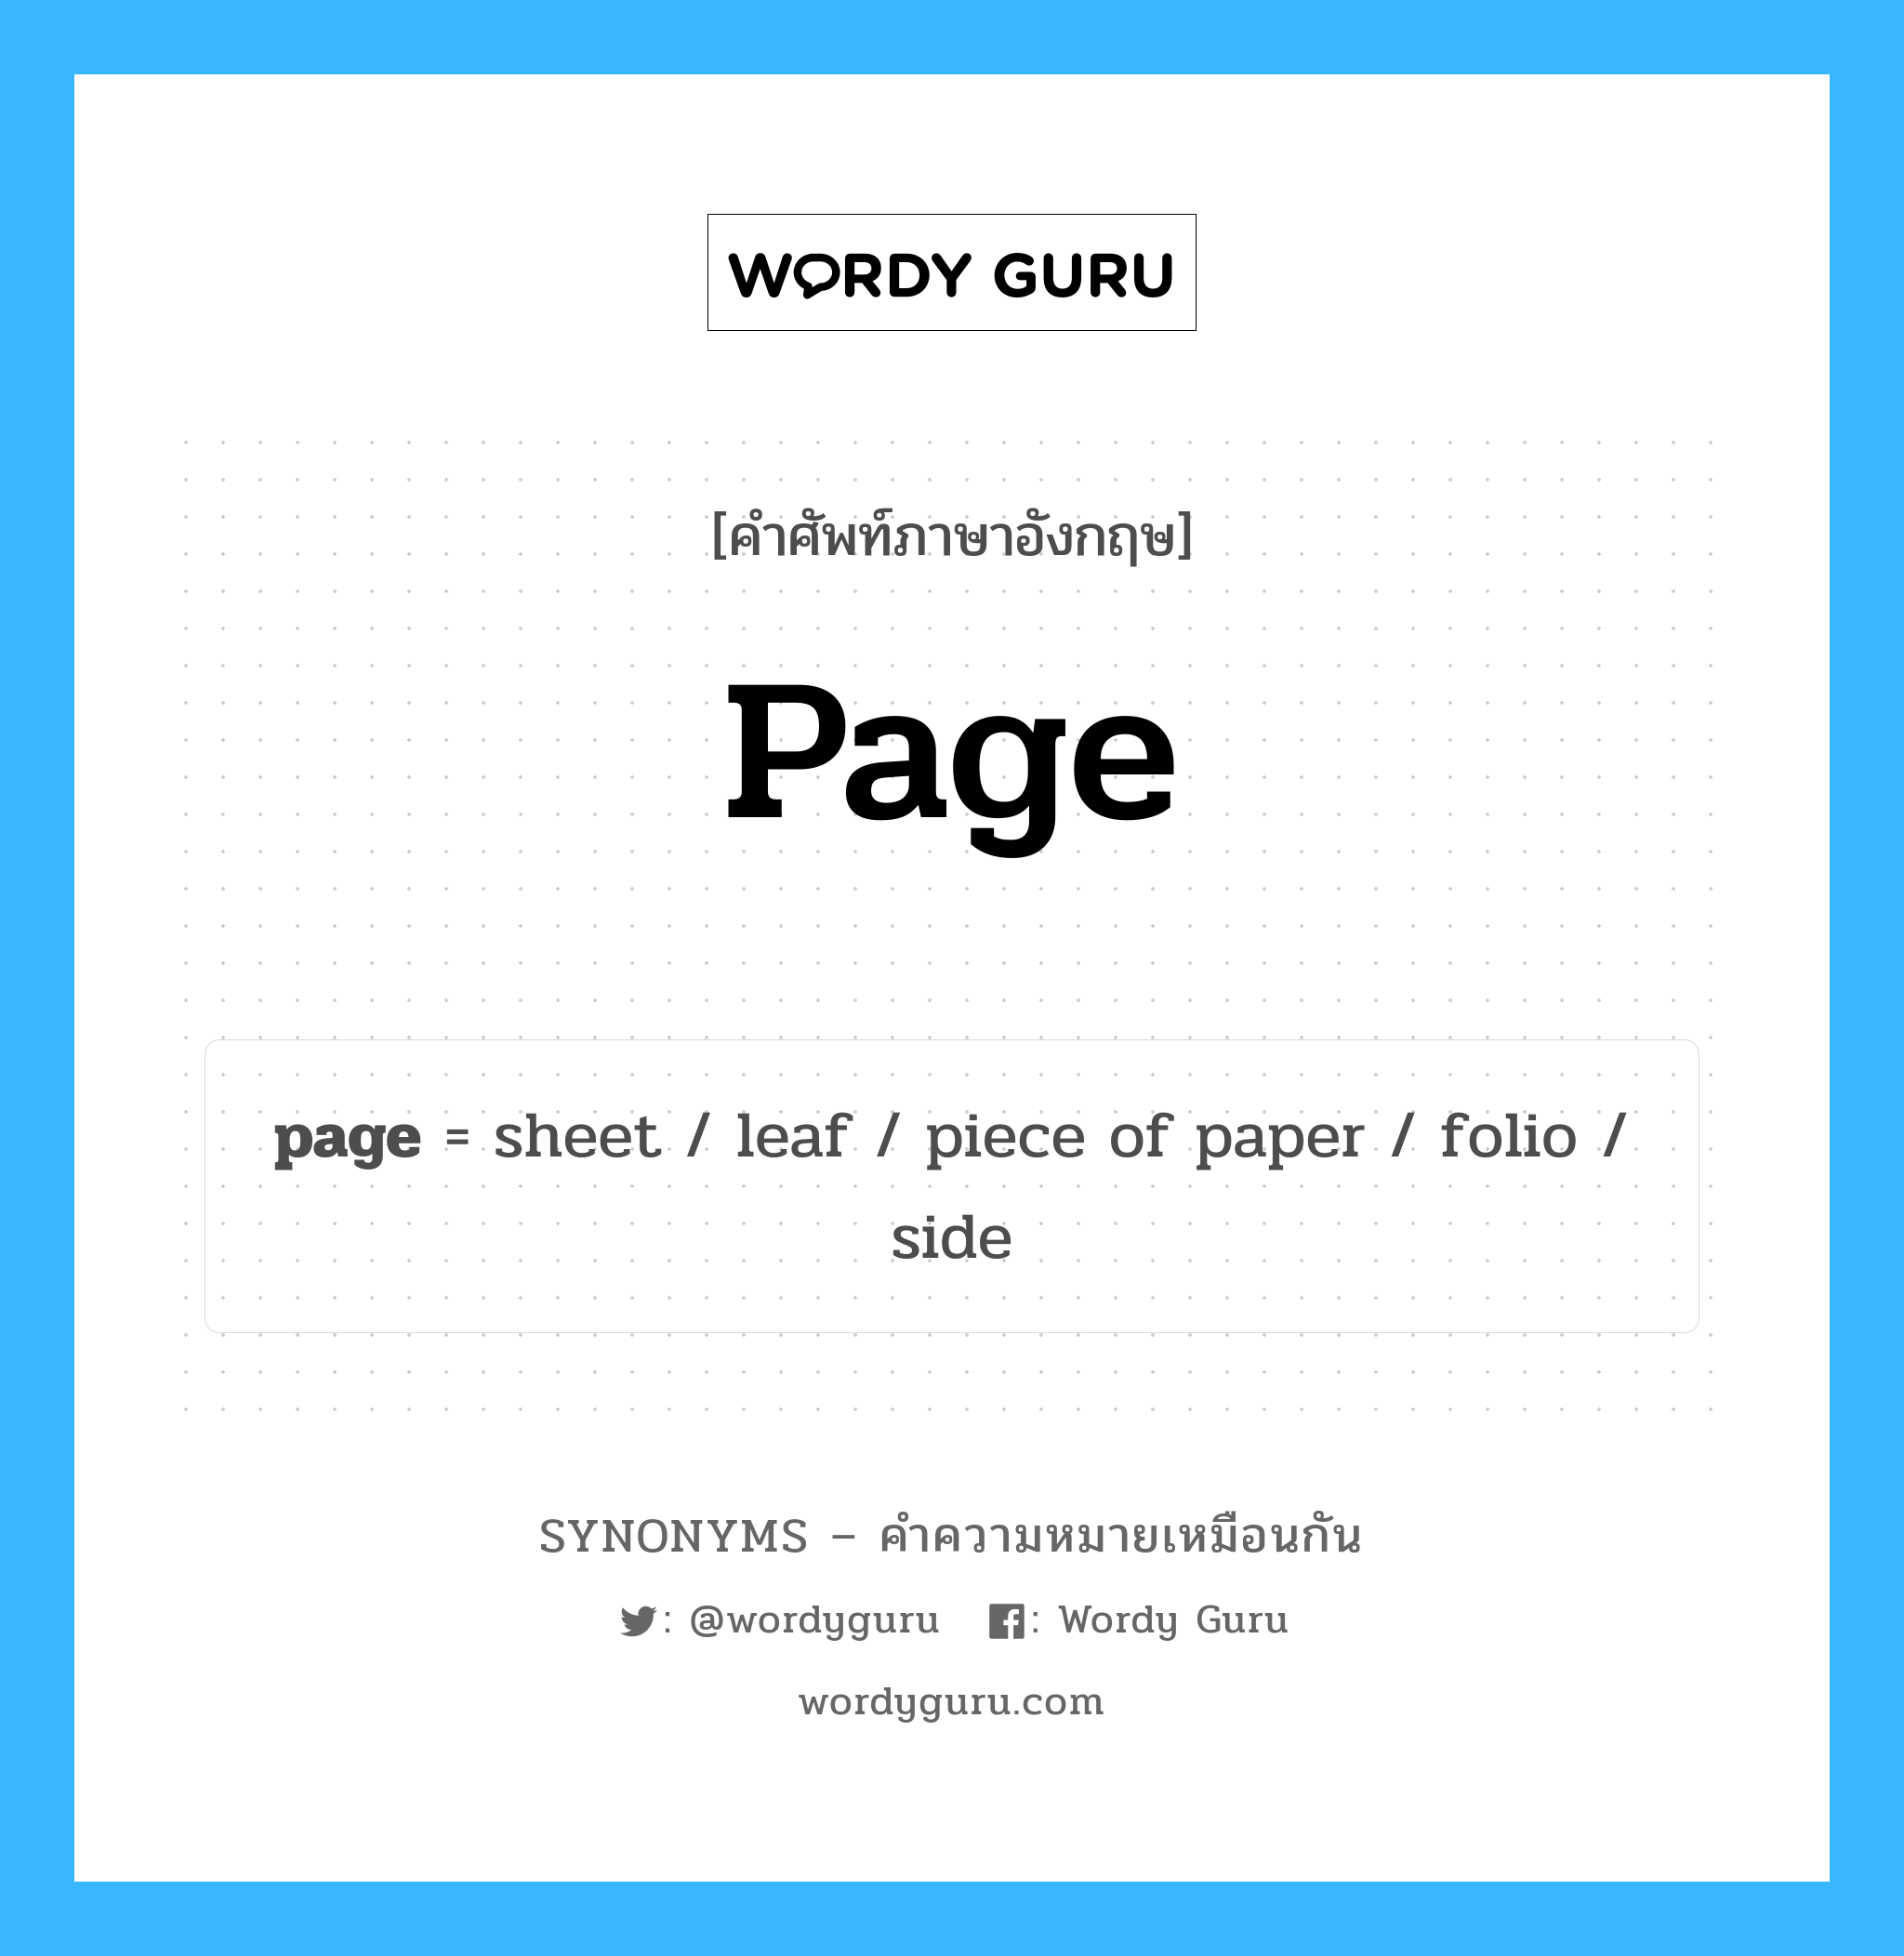 page เป็นหนึ่งใน piece of paper และมีคำอื่น ๆ อีกดังนี้, คำศัพท์ภาษาอังกฤษ page ความหมายคล้ายกันกับ piece of paper แปลว่า กระดาษ หมวด piece of paper